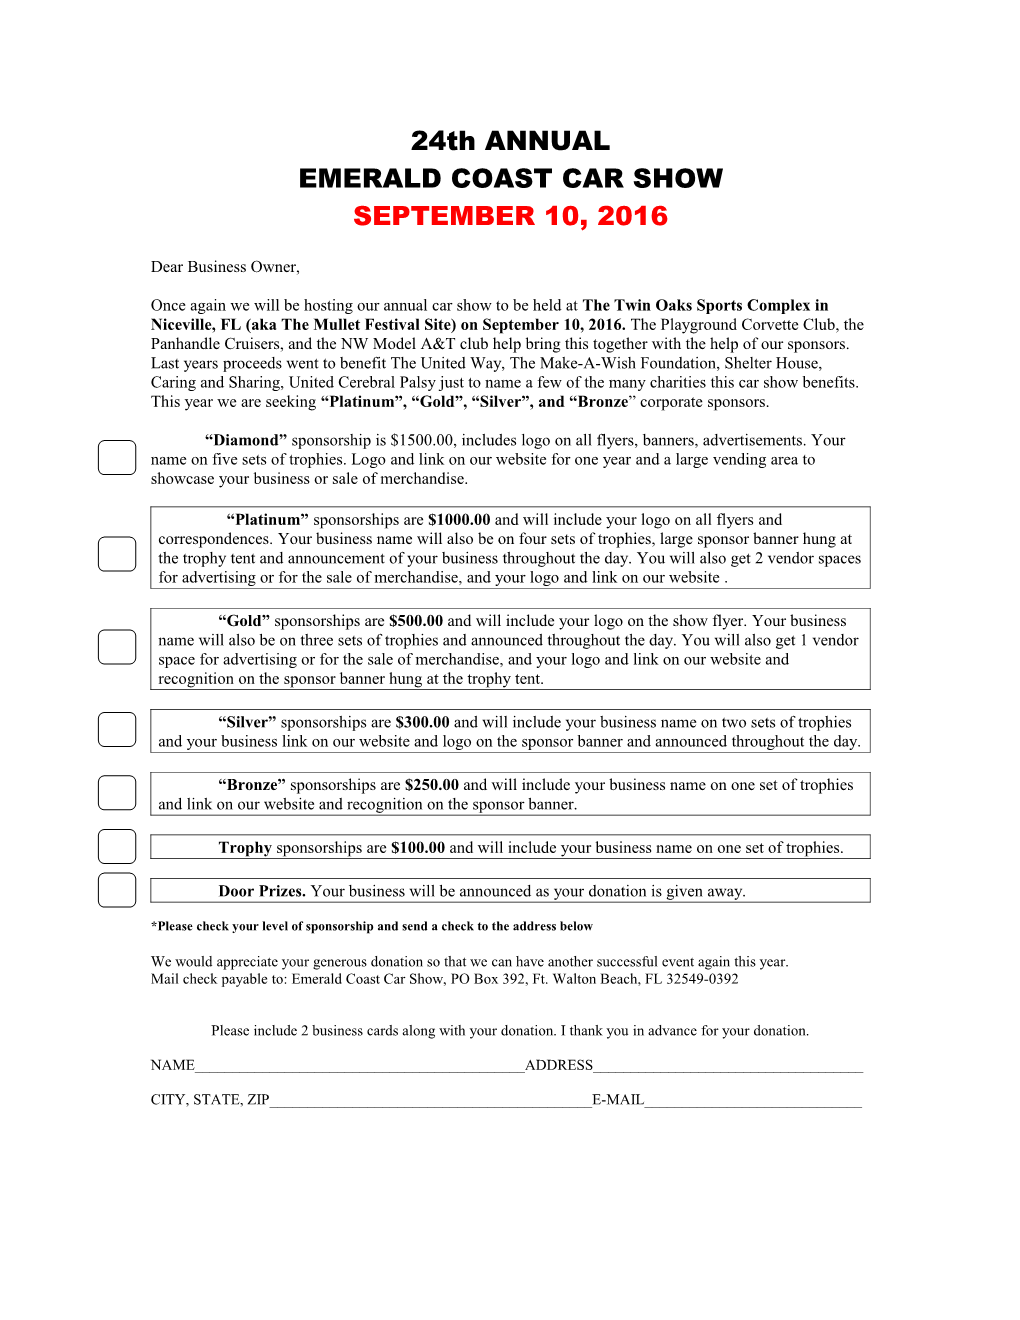 Emeraldcoast Car Show